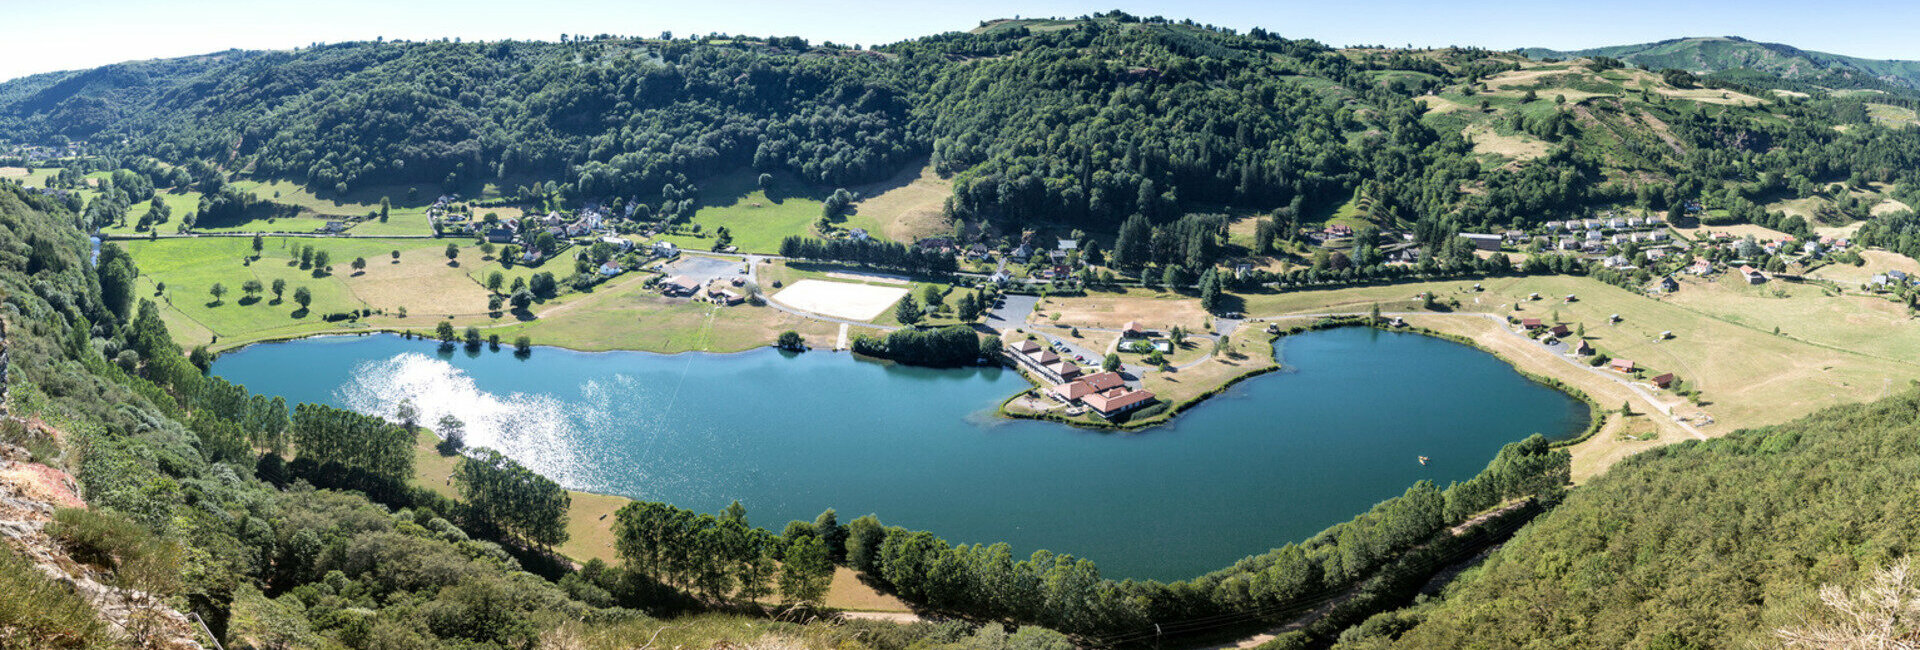 Pêche -Pêche à la mouche - Le Lac des Graves en Auvergne - Cantal : Hôtel, restaurant, multi activités...